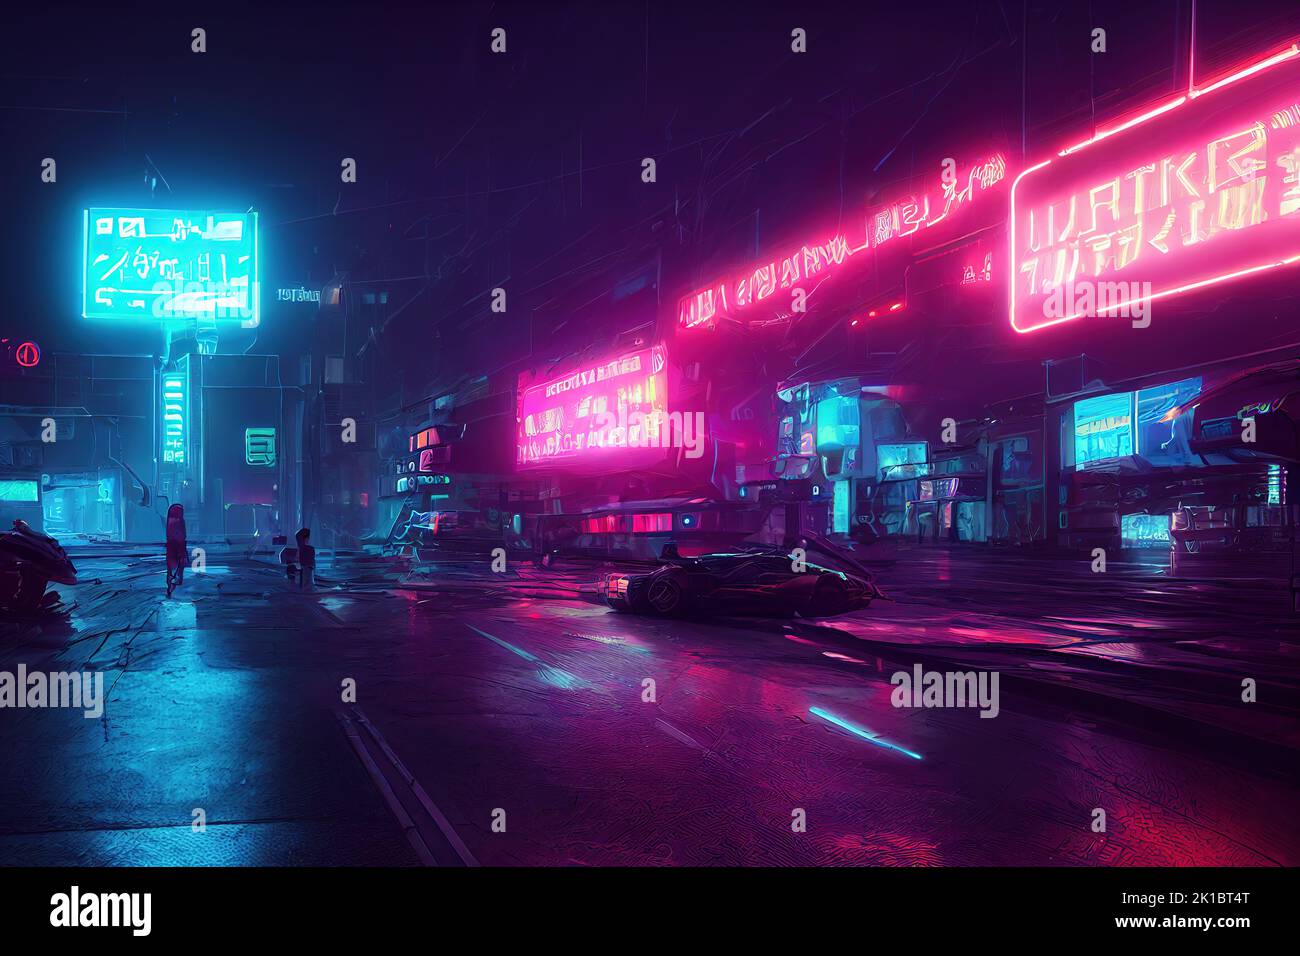 Eine Cyberpunk-Neon-Stadtlandschaft, futuristische Farben, dystopische Welt, anders ausgedrückt Stockfoto